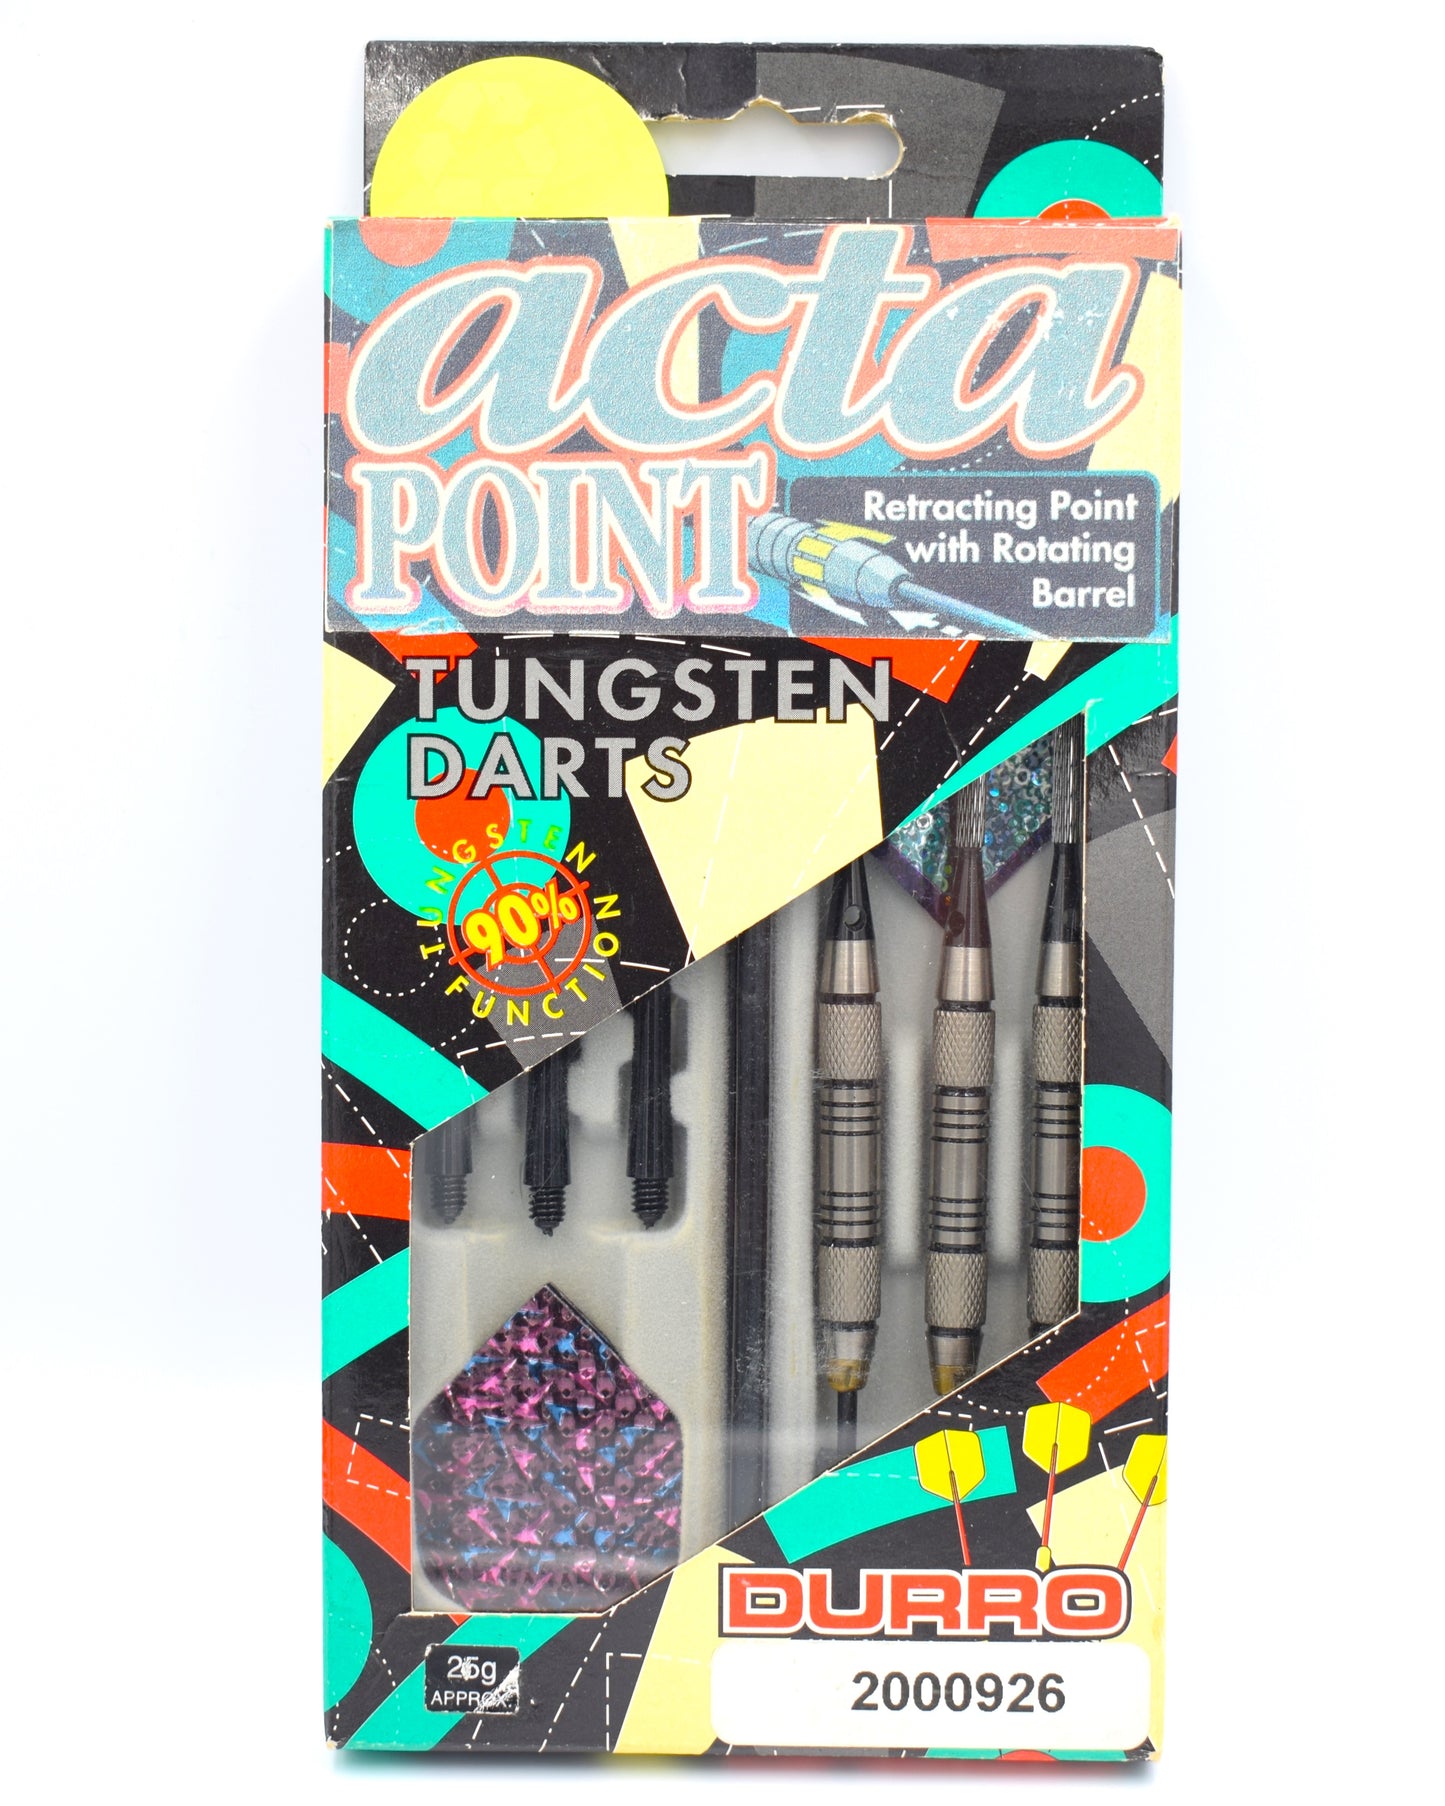 Durro Darts - Acta Point 26g Darts